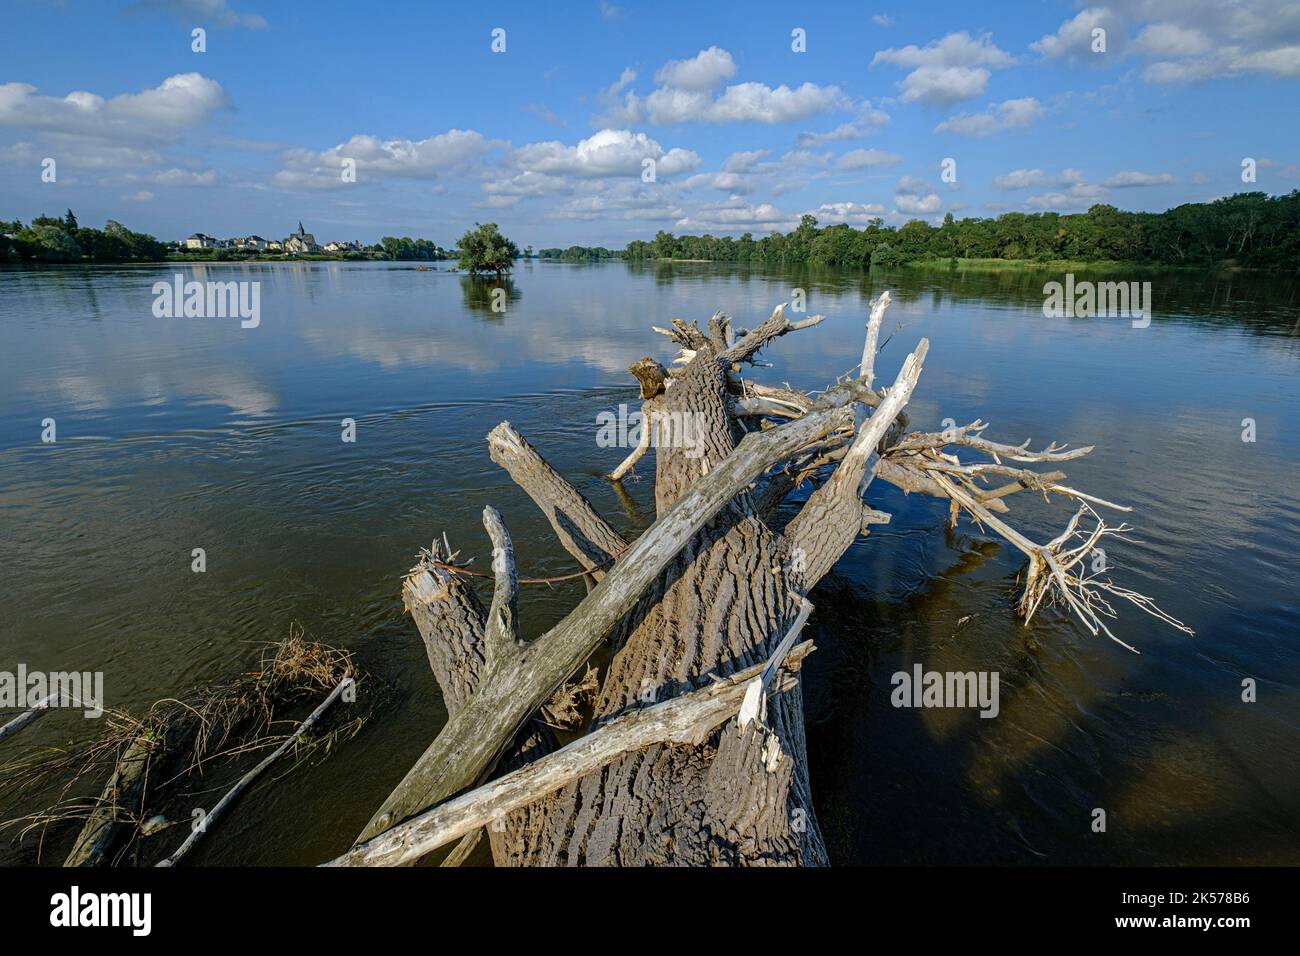 France, Indre et Loire, Vallée de la Loire classée au patrimoine mondial de l'UNESCO, les rives de la Loire, arbre transporté par inondations Banque D'Images